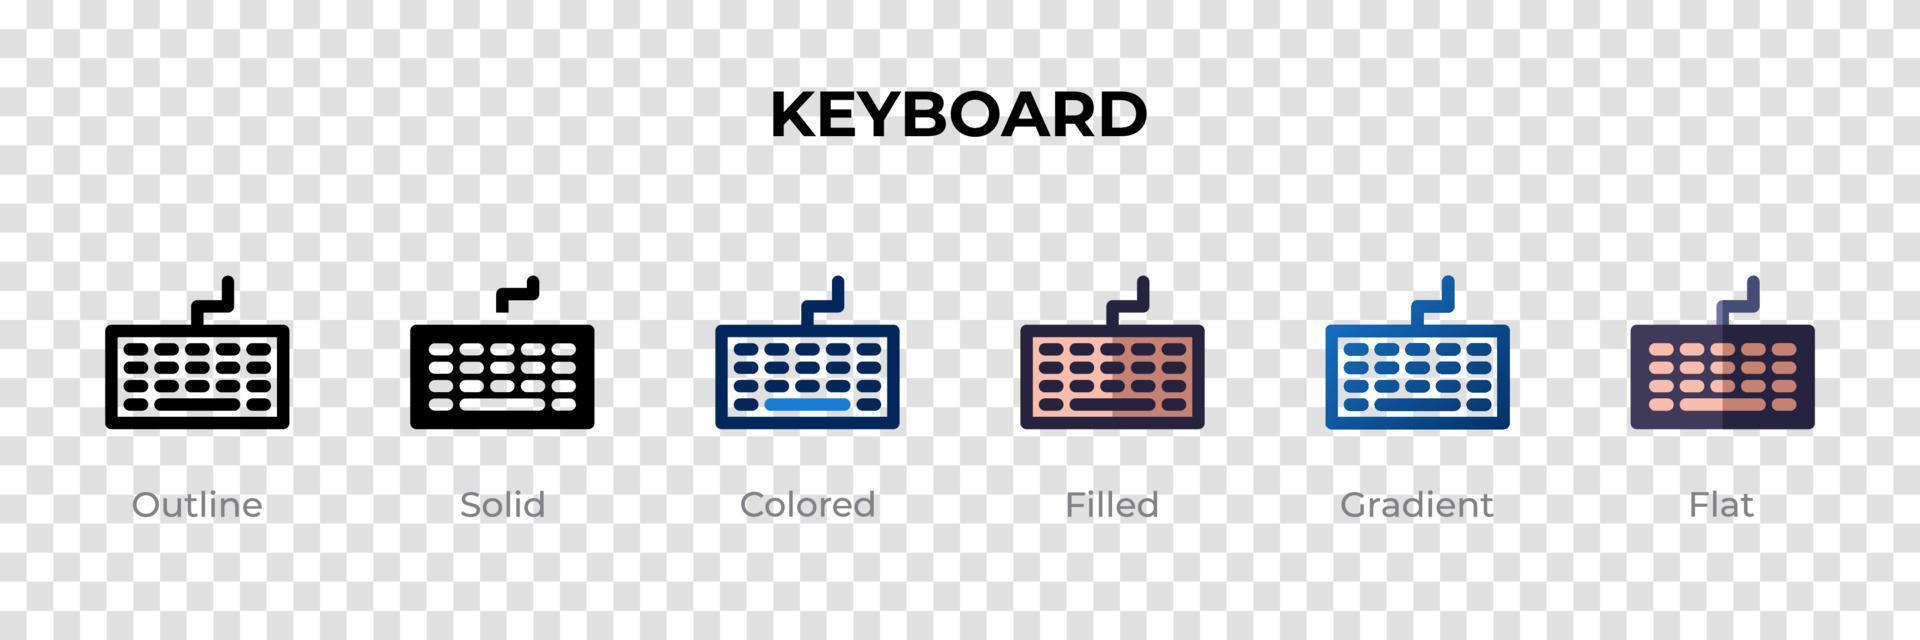 toetsenbordpictogram in verschillende stijl. toetsenbord vector iconen ontworpen in omtrek, effen, gekleurd, gevuld, verloop en platte stijl. symbool, logo afbeelding. vector illustratie